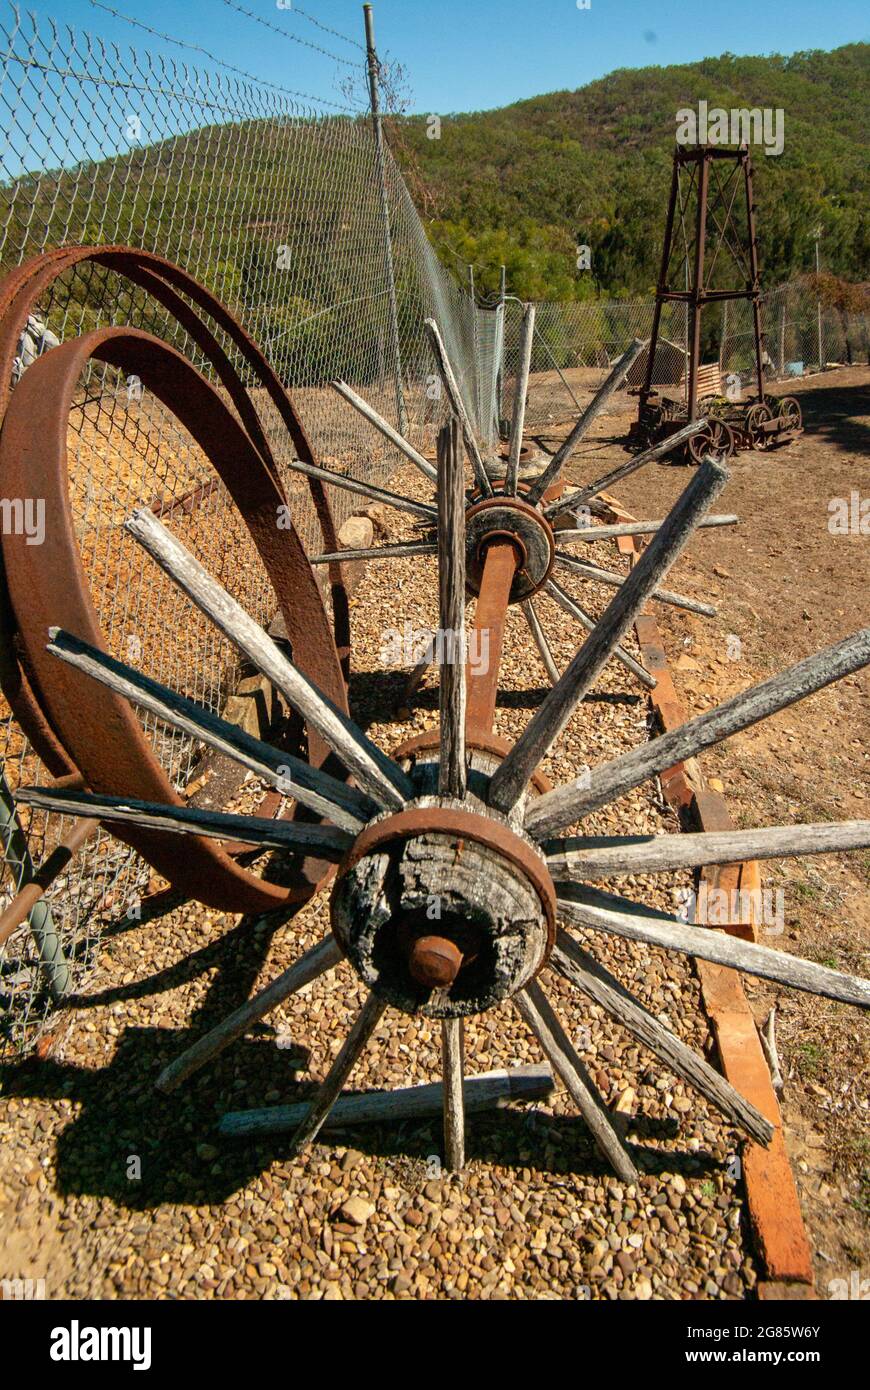 Wagon roue, rayons en bois et jantes métalliques, Irvinebank North Queensland, Australie Banque D'Images